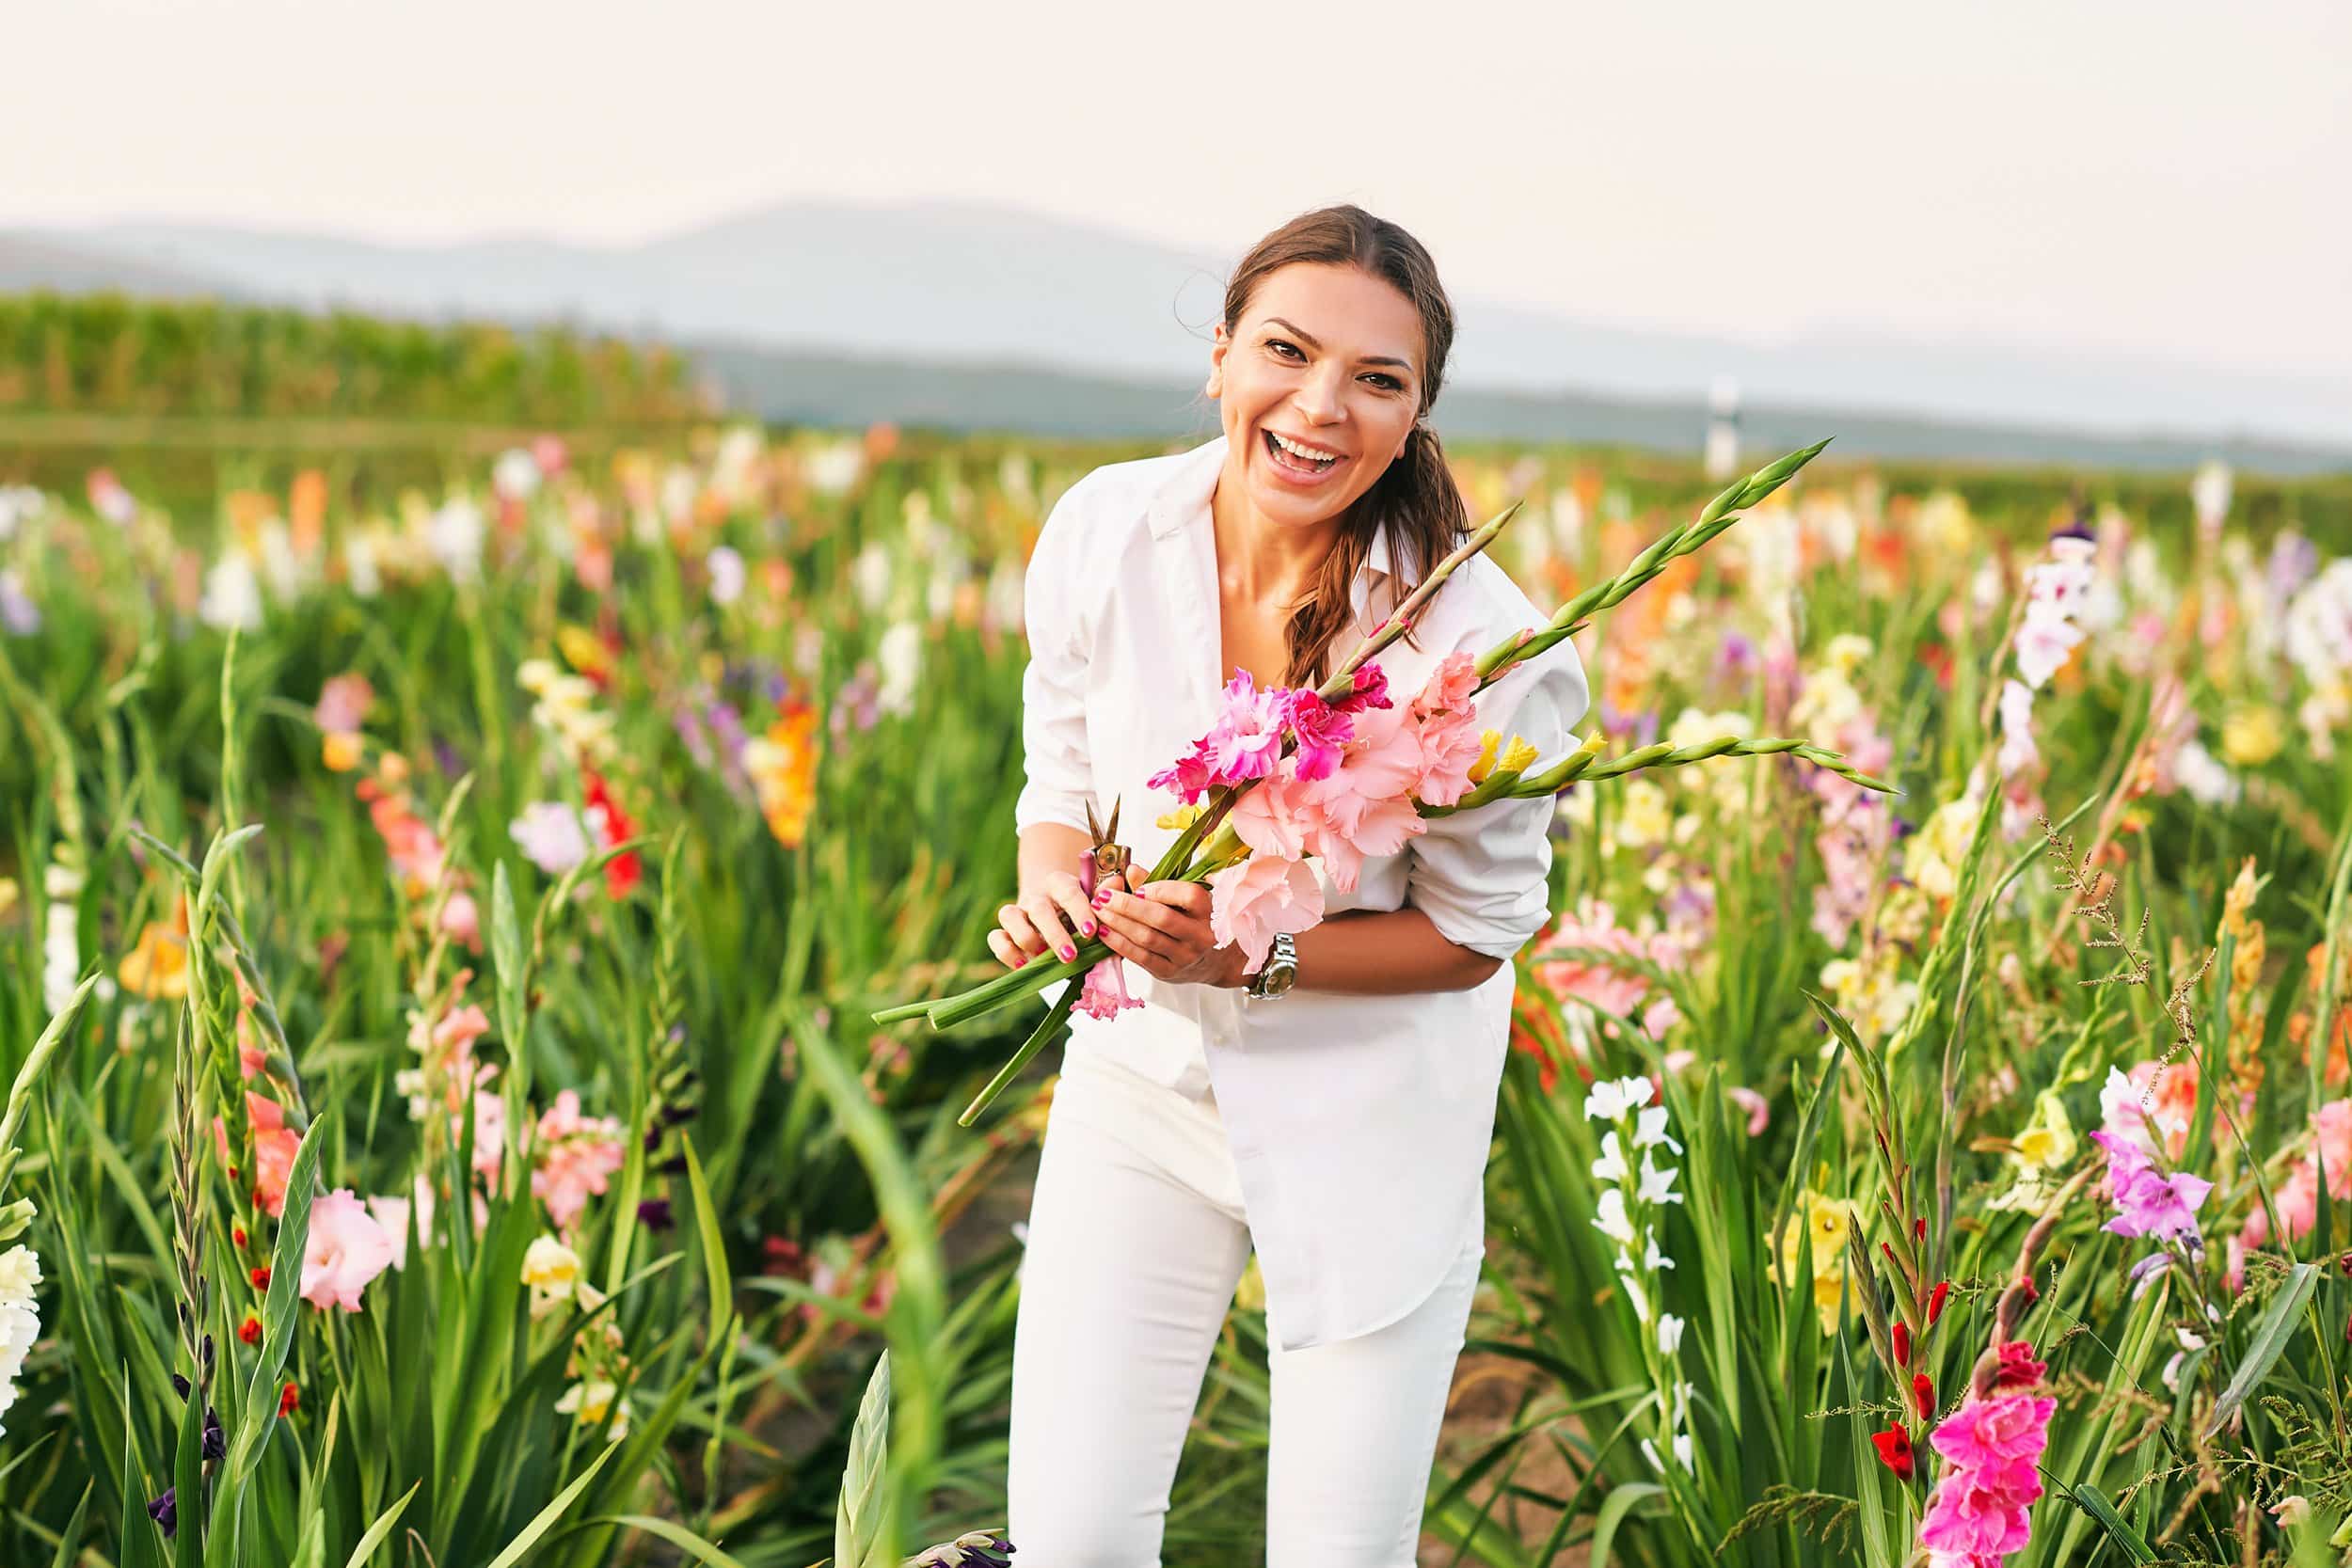 Joyful woman indulging in her hobby, cutting gladiolus on a vibrant flower farm